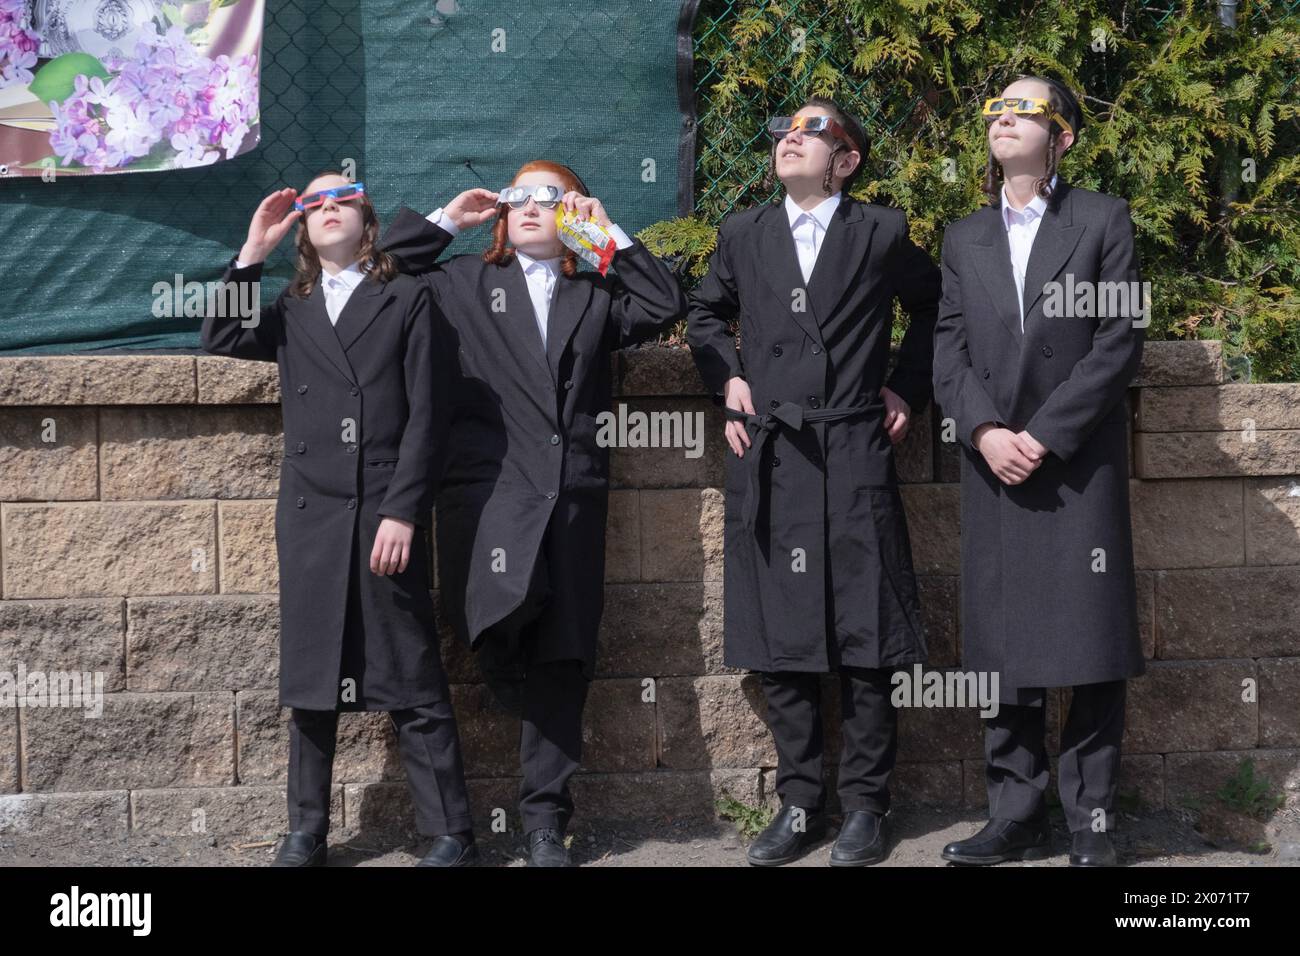 Nel loro cortile scolastico, 4 studenti ebrei ortodossi guardano l'eclissi solare del 2024 attraverso occhiali di sicurezza. Nella contea di Rockland, New York. Foto Stock